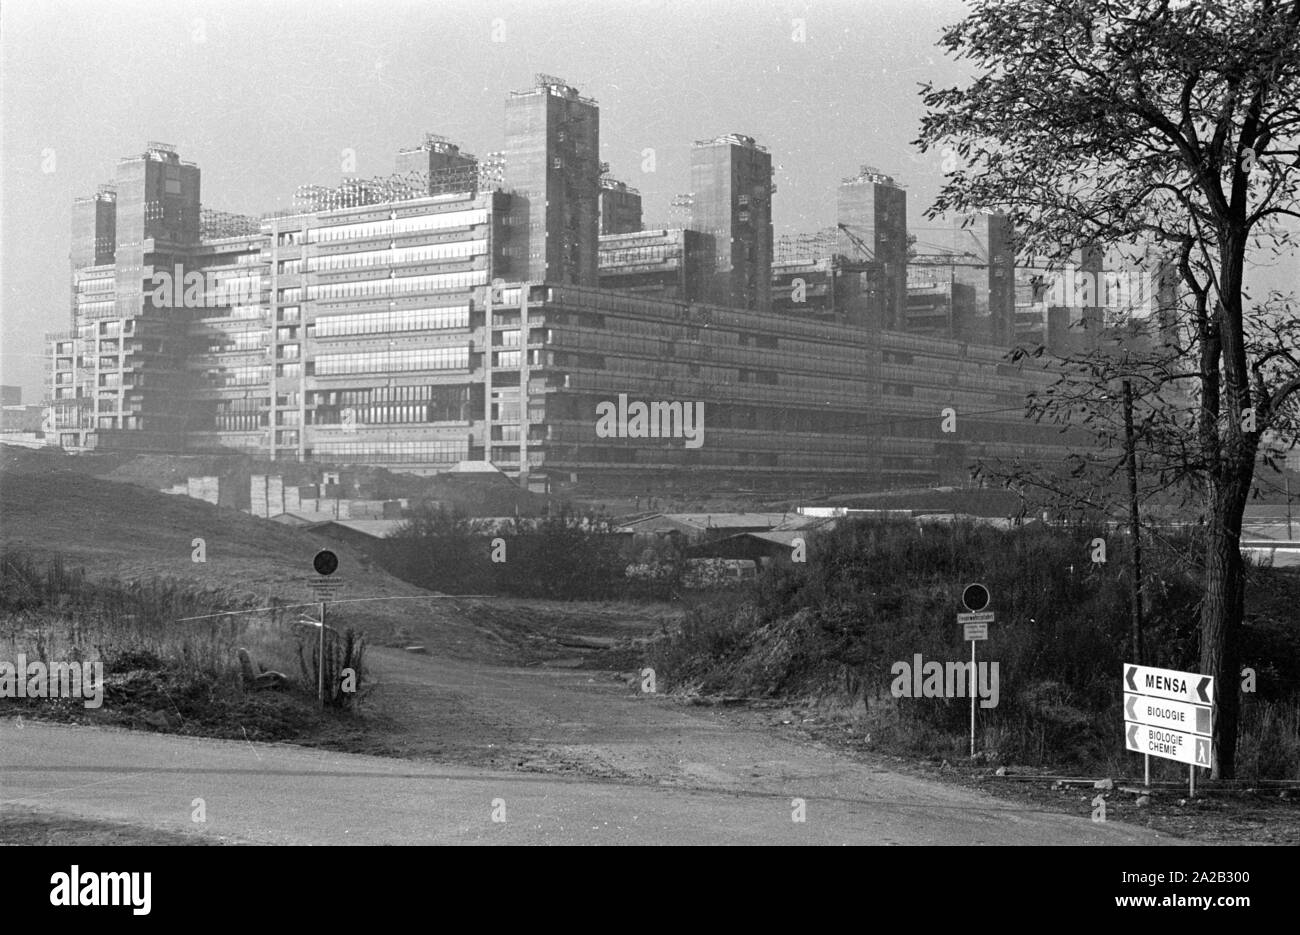 Blick auf die Baustelle des Universitaetsklinikum Aachen (Universitätsklinikum Aachen). Der Bau im Jahre 1971 begonnen, wurde das Gebäude nach und nach im Jahr 1984 beendet, die feierliche Einweihung fand am 21.3.1985. Das Bild zeigt die Shell, die bereits 1978 abgeschlossen wurde. Stockfoto